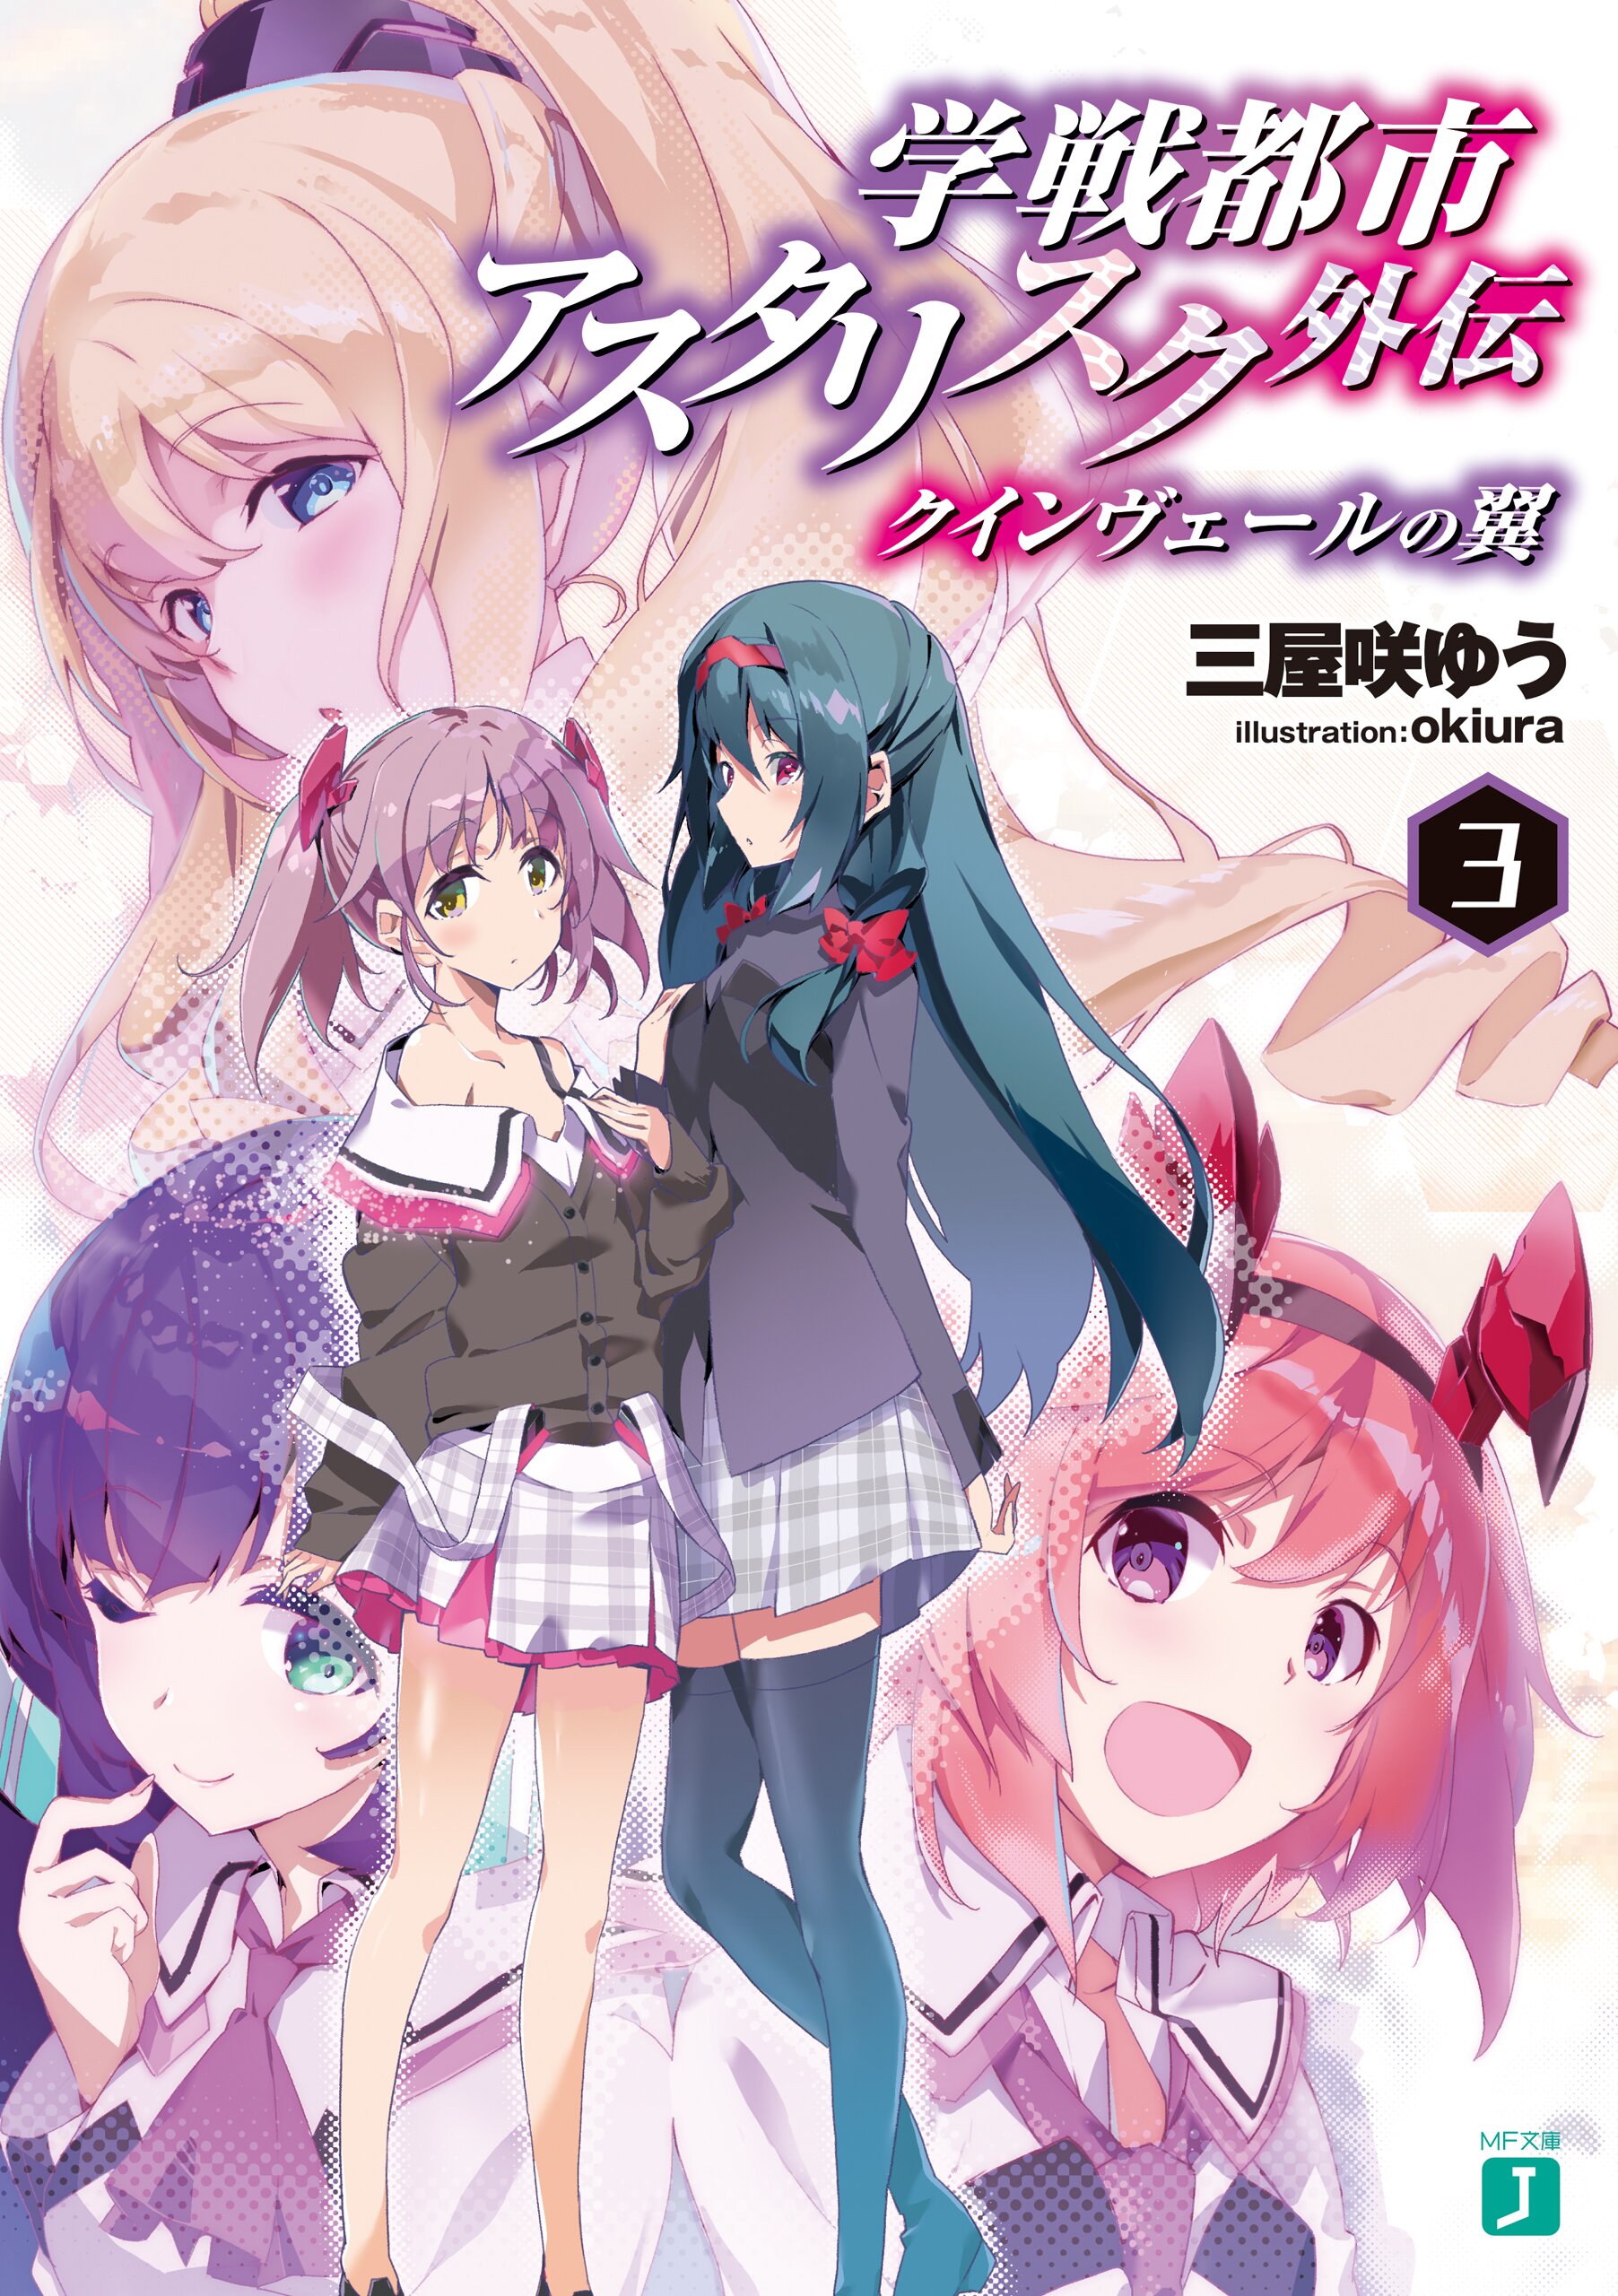 Asterisk Light Novel Volume 3, Gakusen Toshi Asterisk Wiki